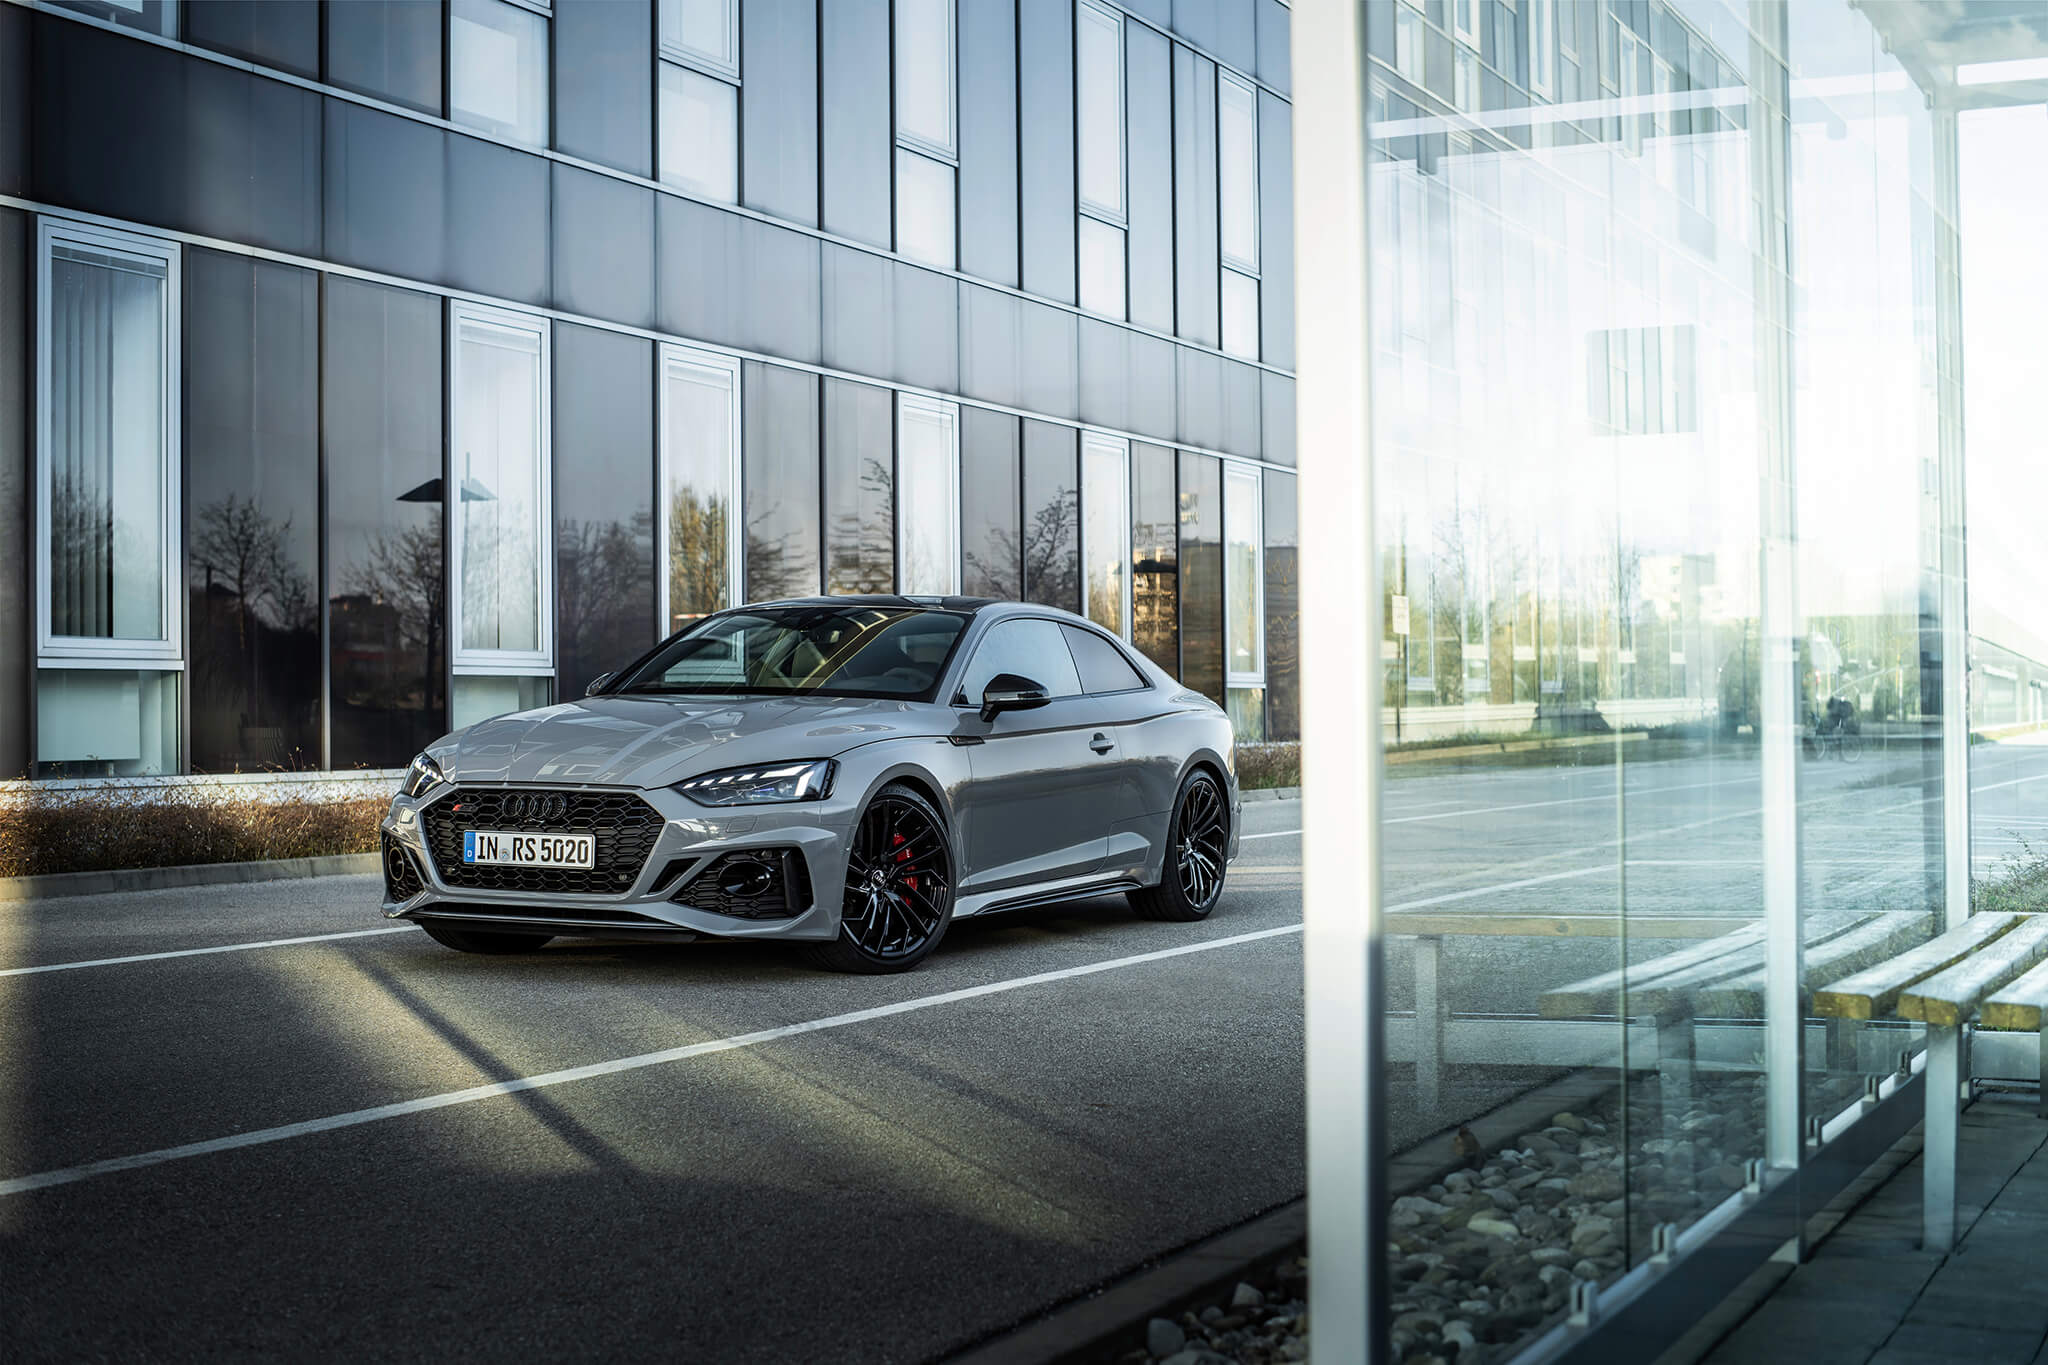 Audi RS 5 Coupé 2020